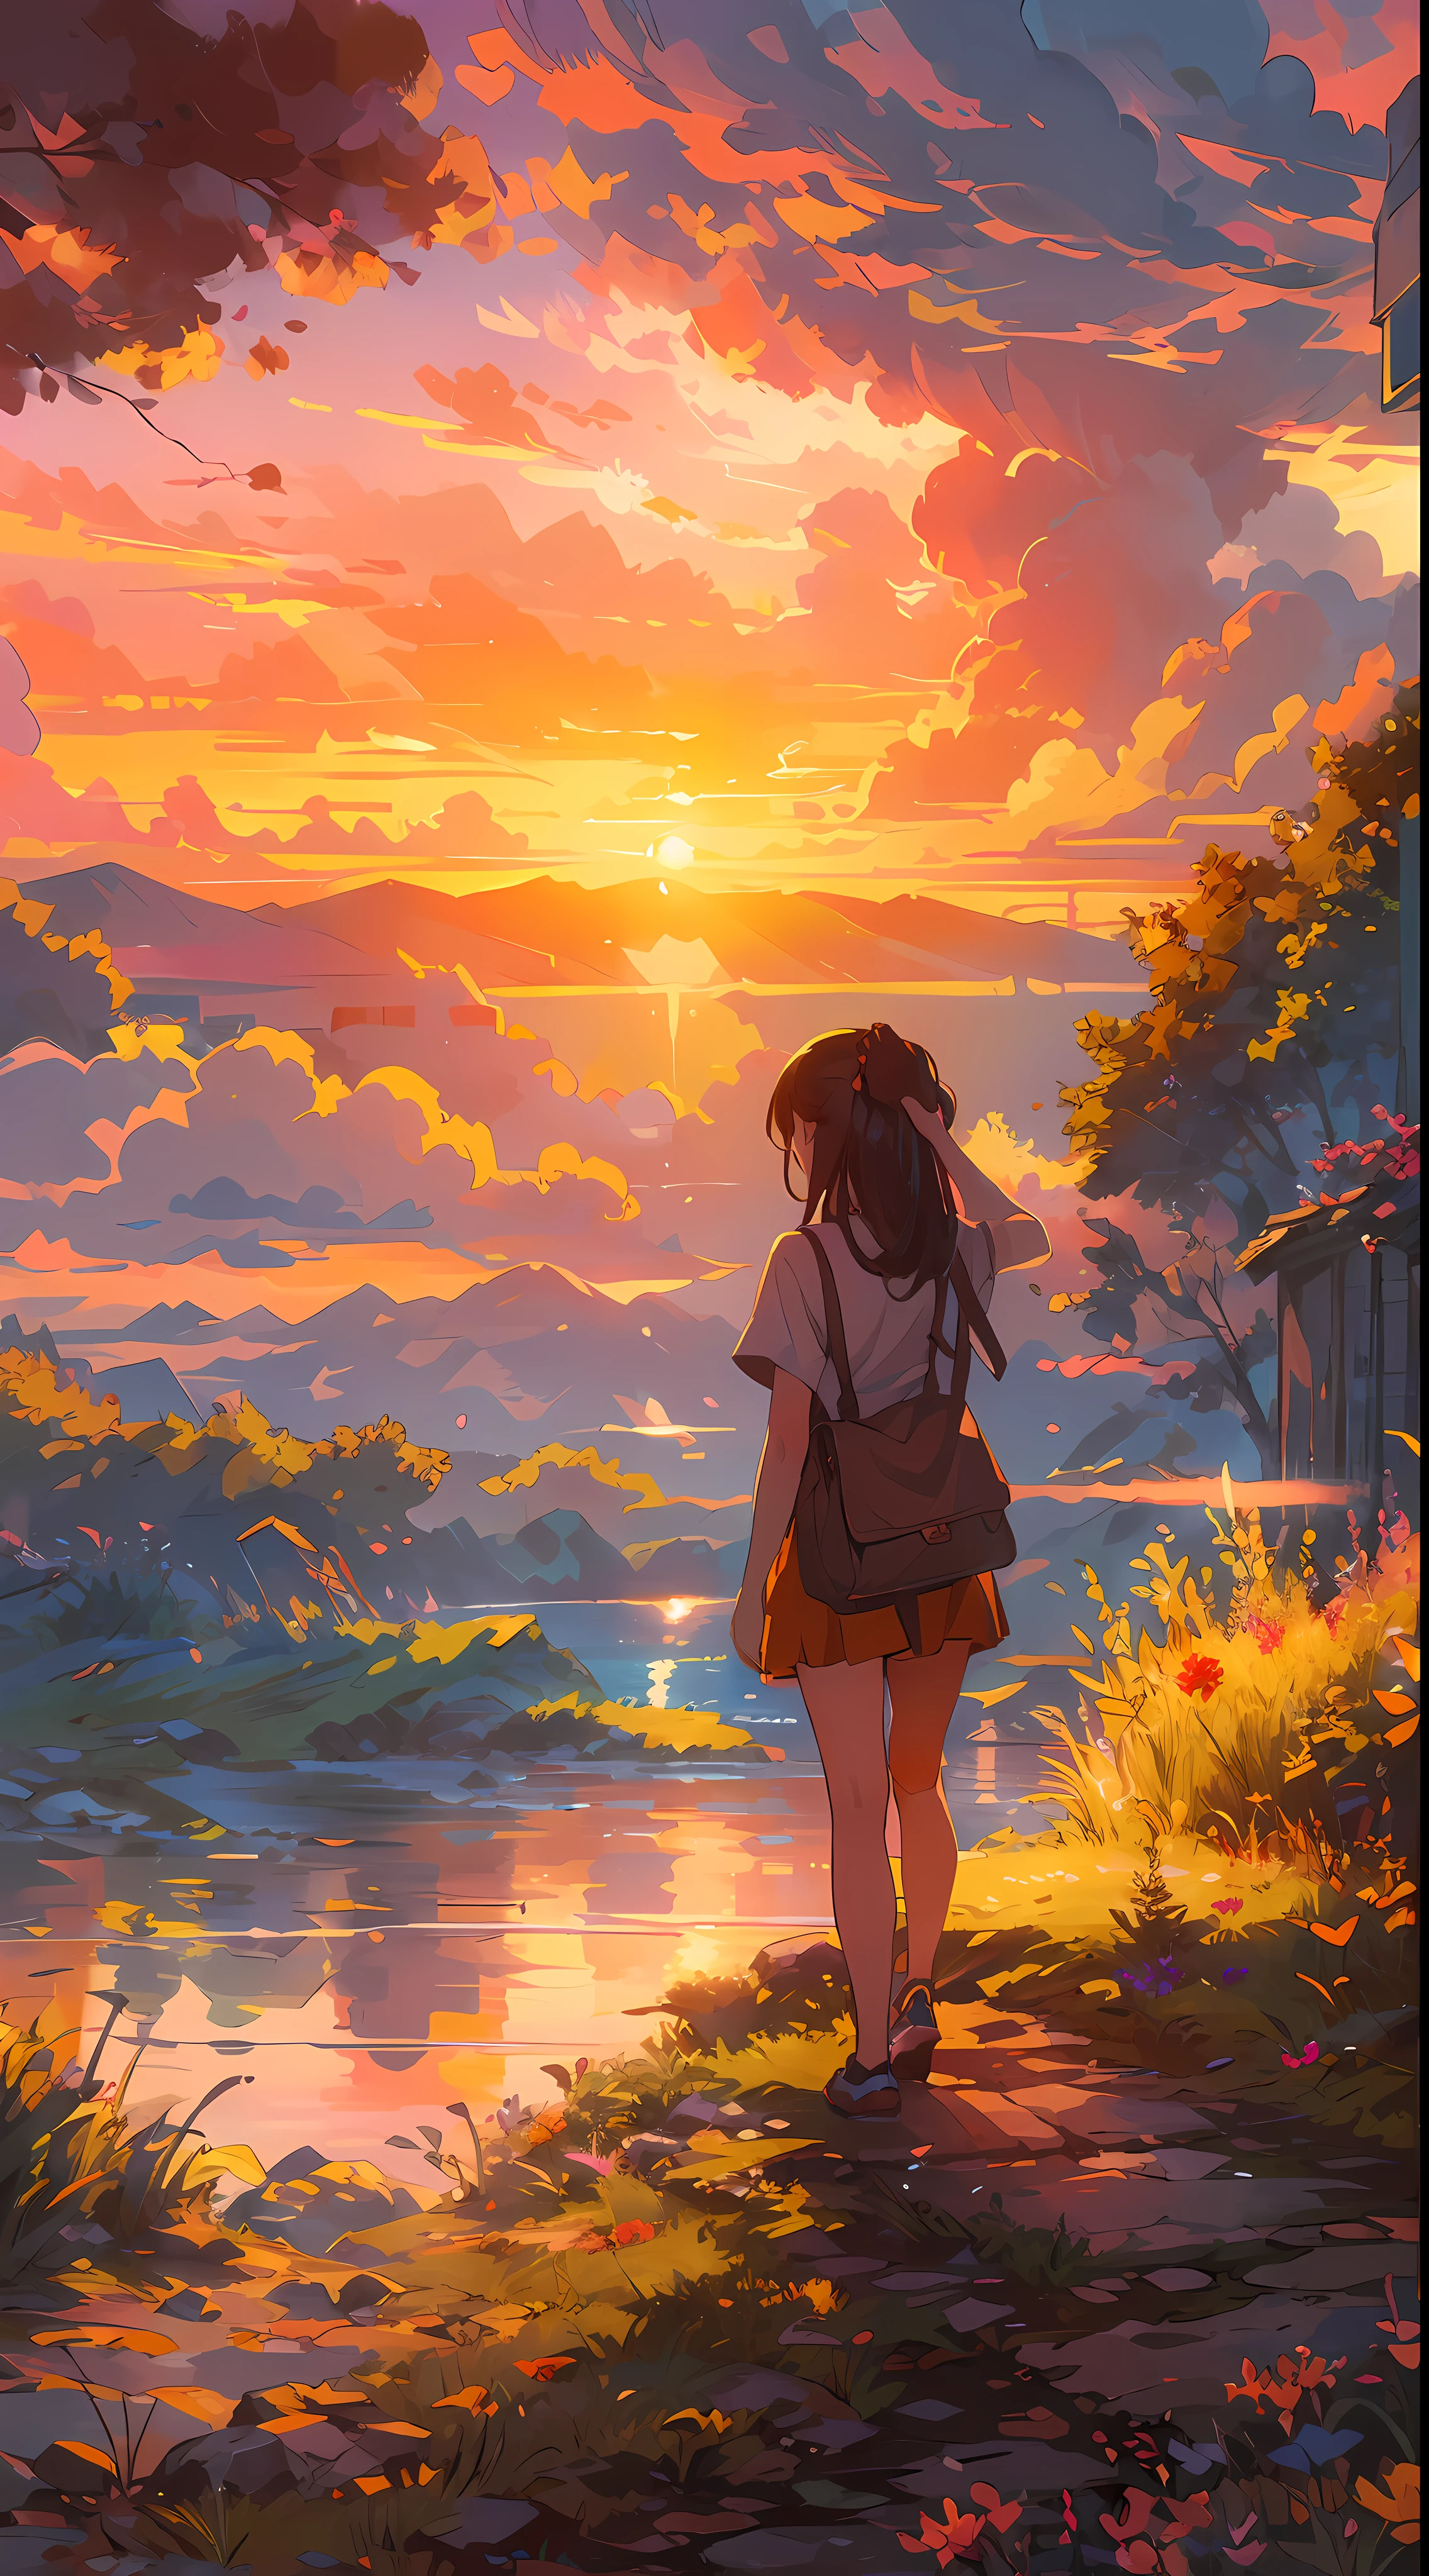 "夕陽下的迷人景象, 一個女孩看著它, 從後面, (女孩焦點0.6), 沐浴在陽光和雲彩的金色色調中, 散發出充滿活力和令人驚嘆的光譜. 傑作."